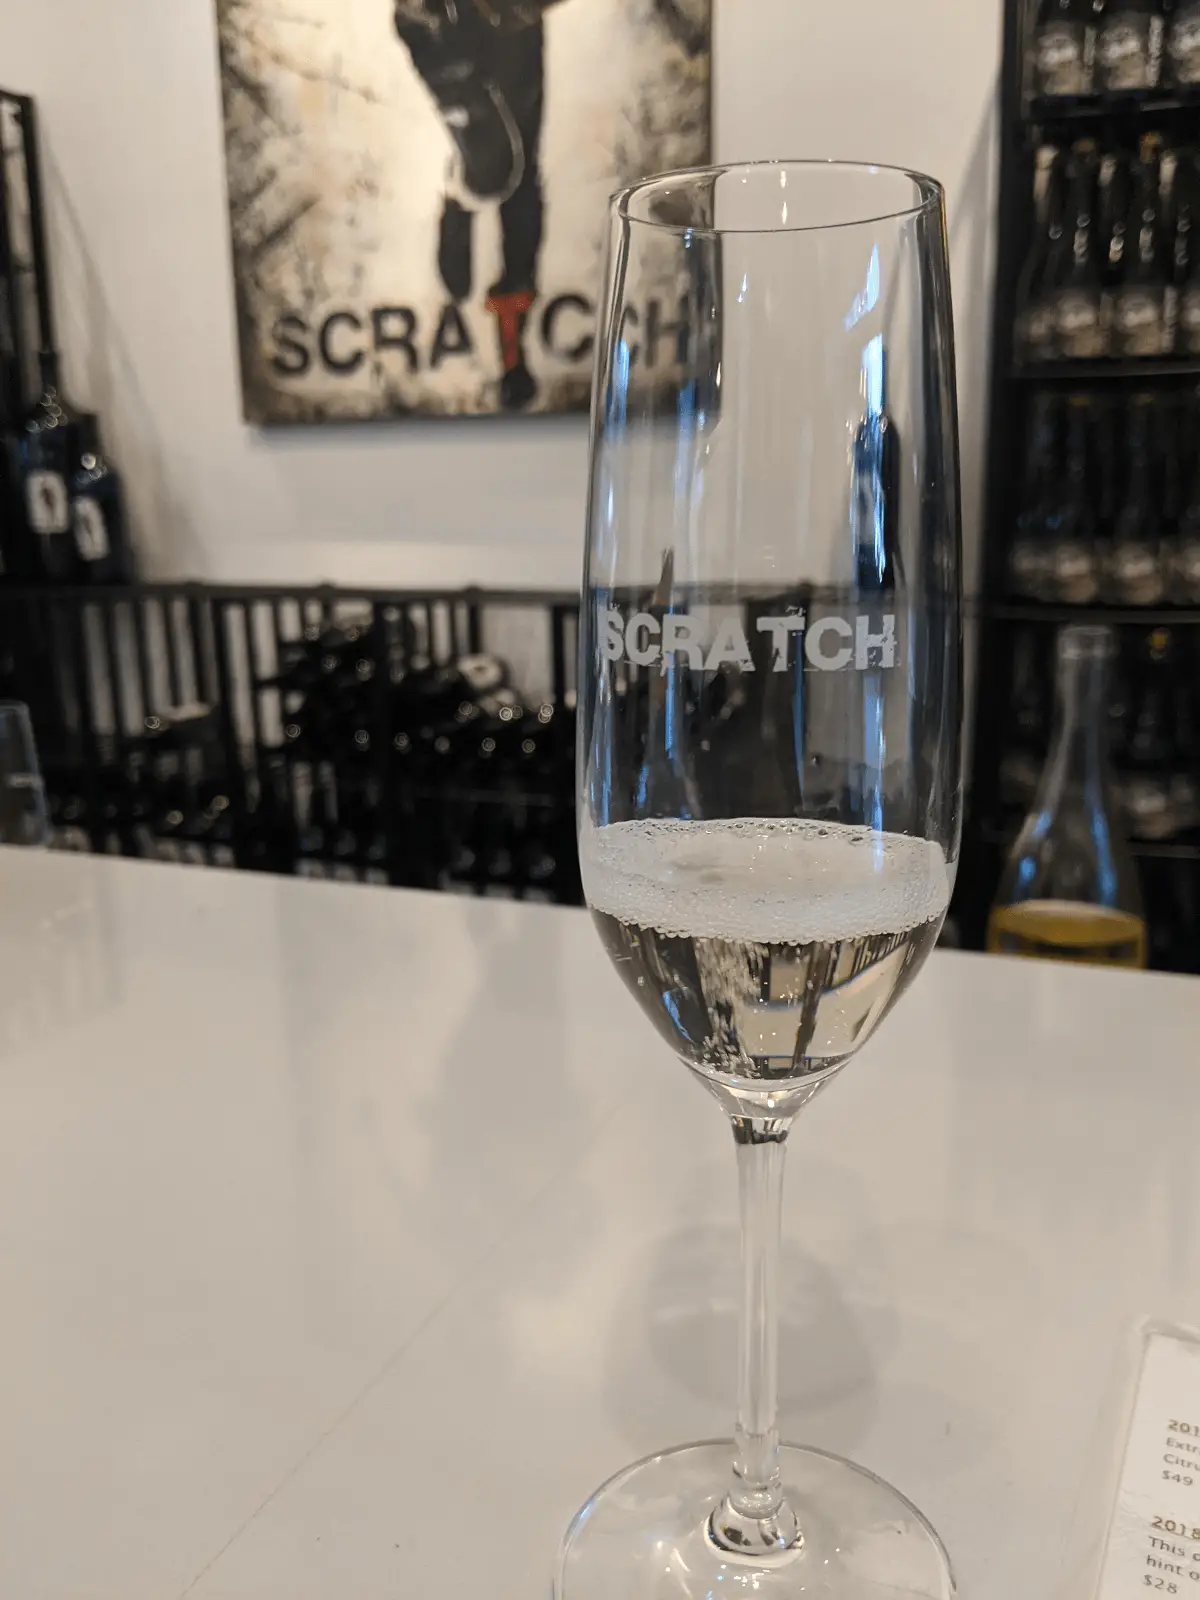 Scratch Winery Sparkling Wine - how bulk wine works